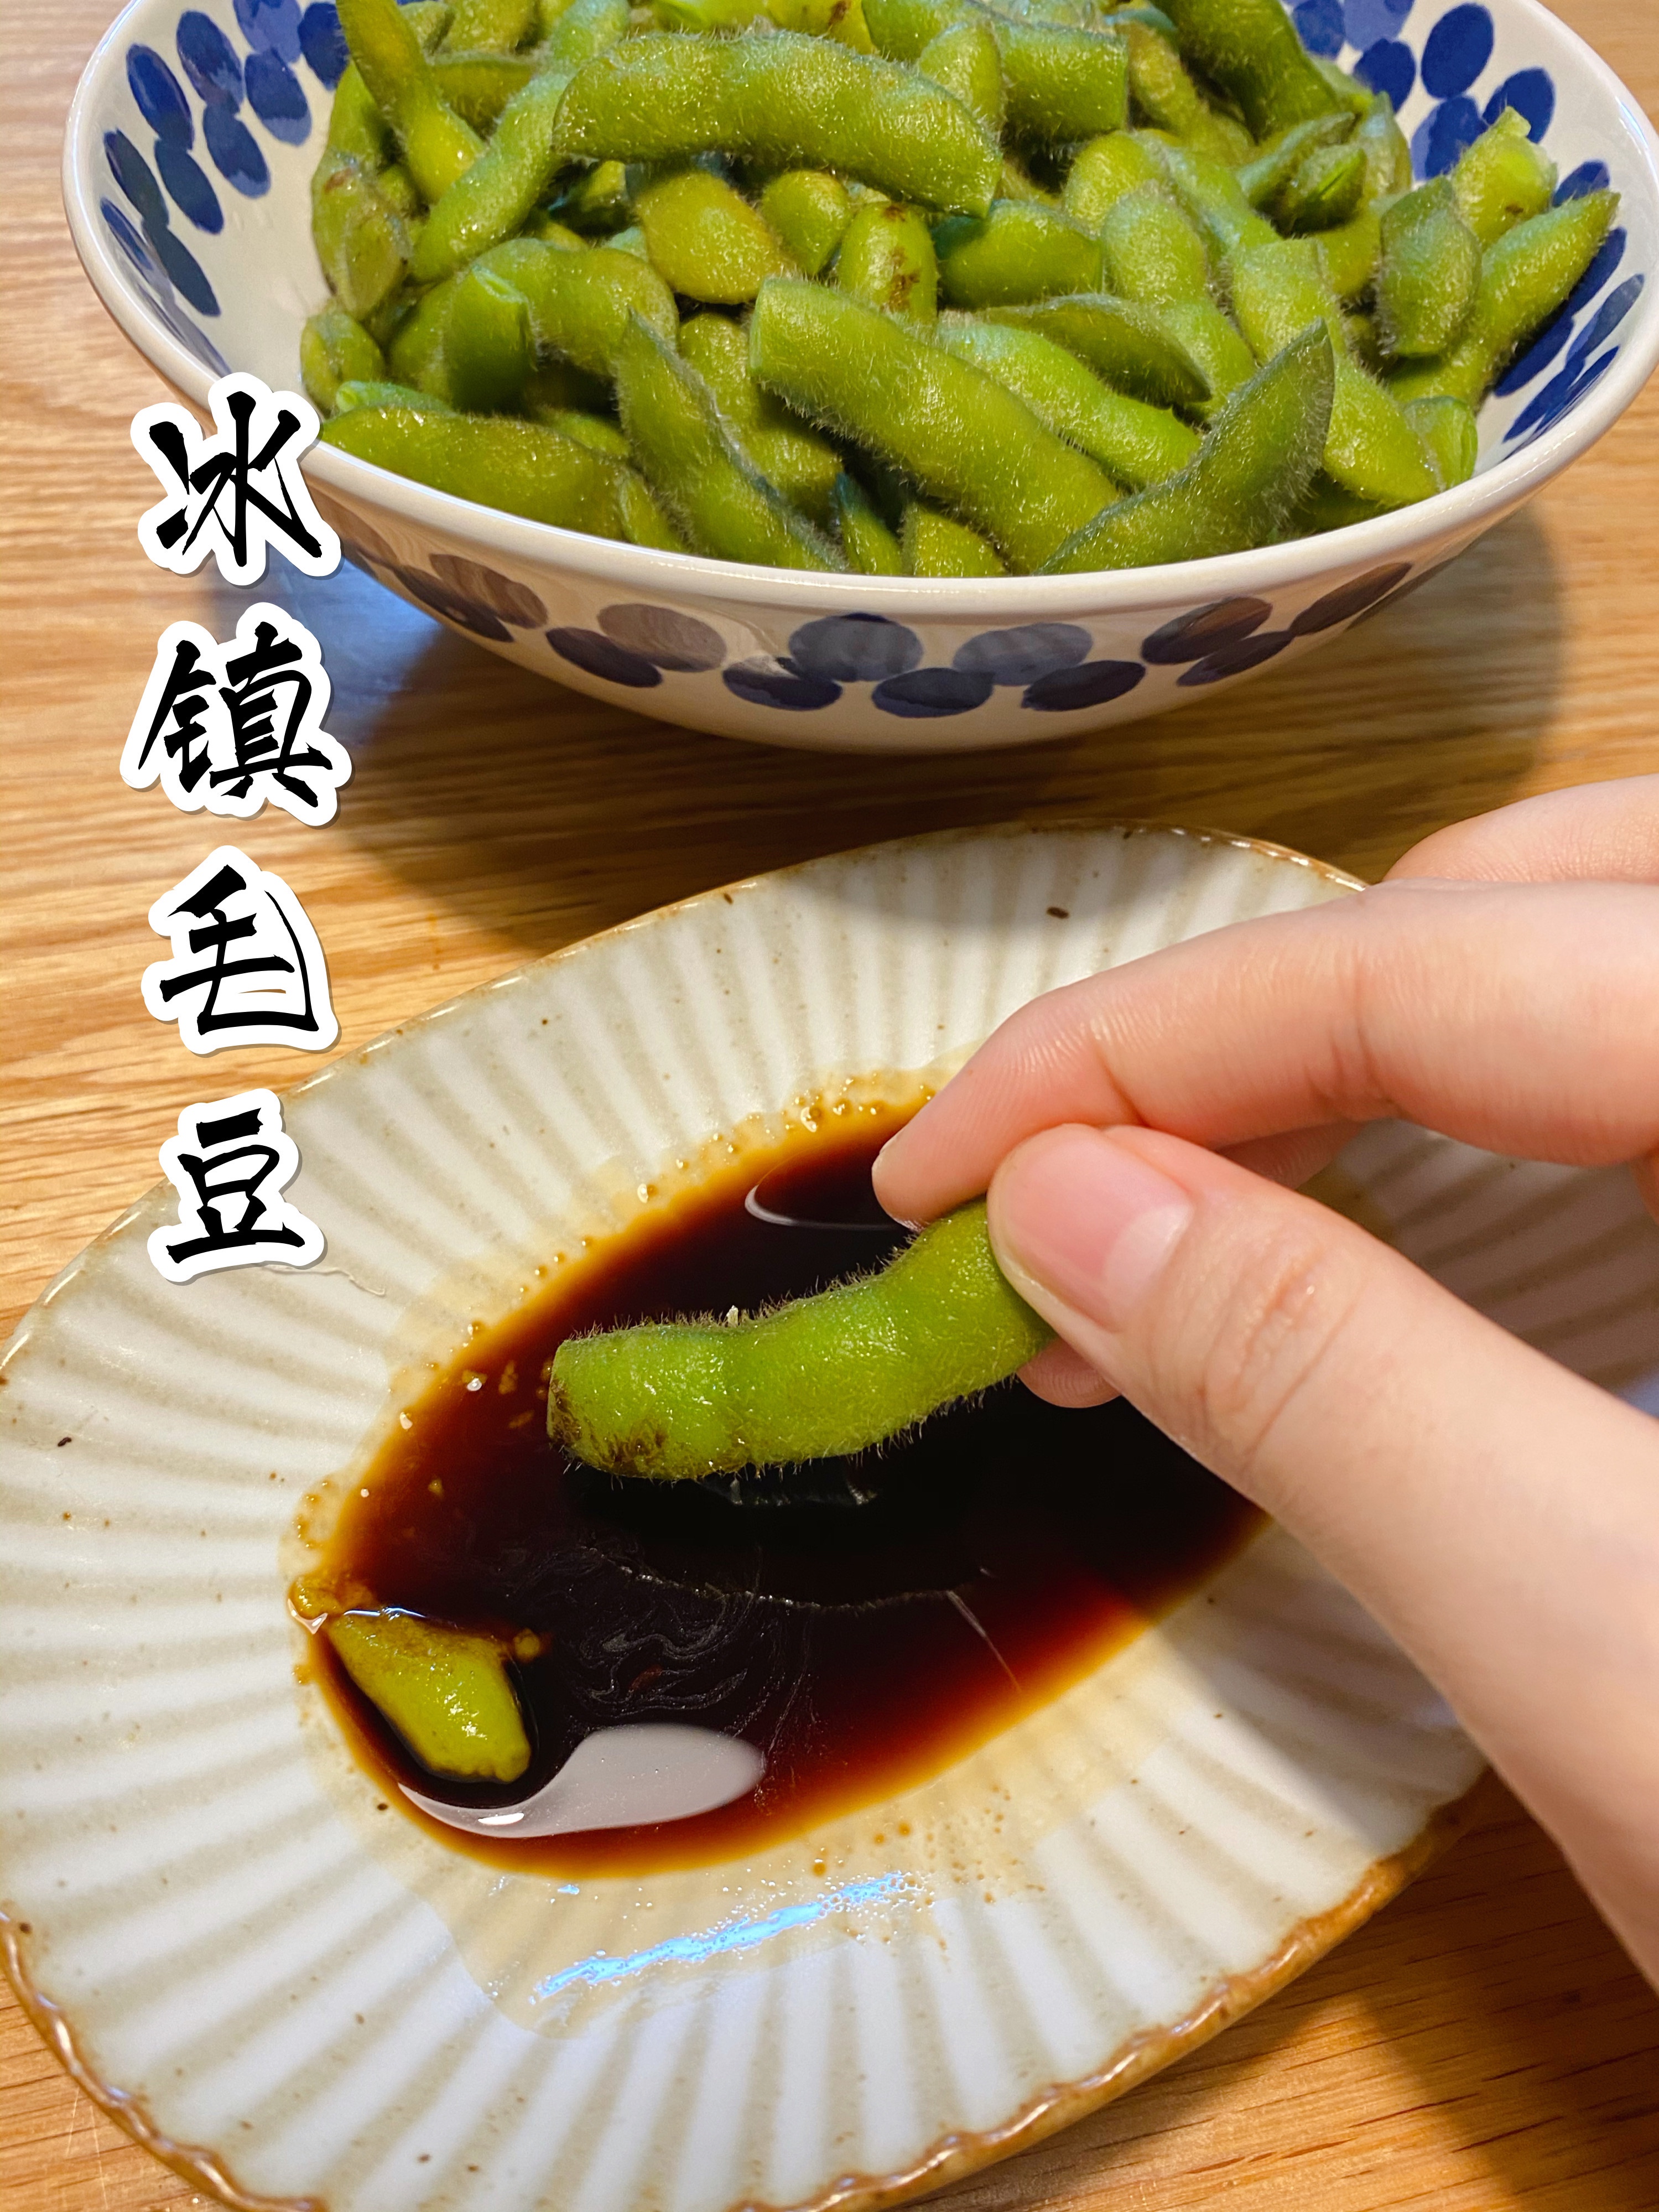 冰镇盐水毛豆蘸芥末酱油，有日式小酒馆内味儿的做法